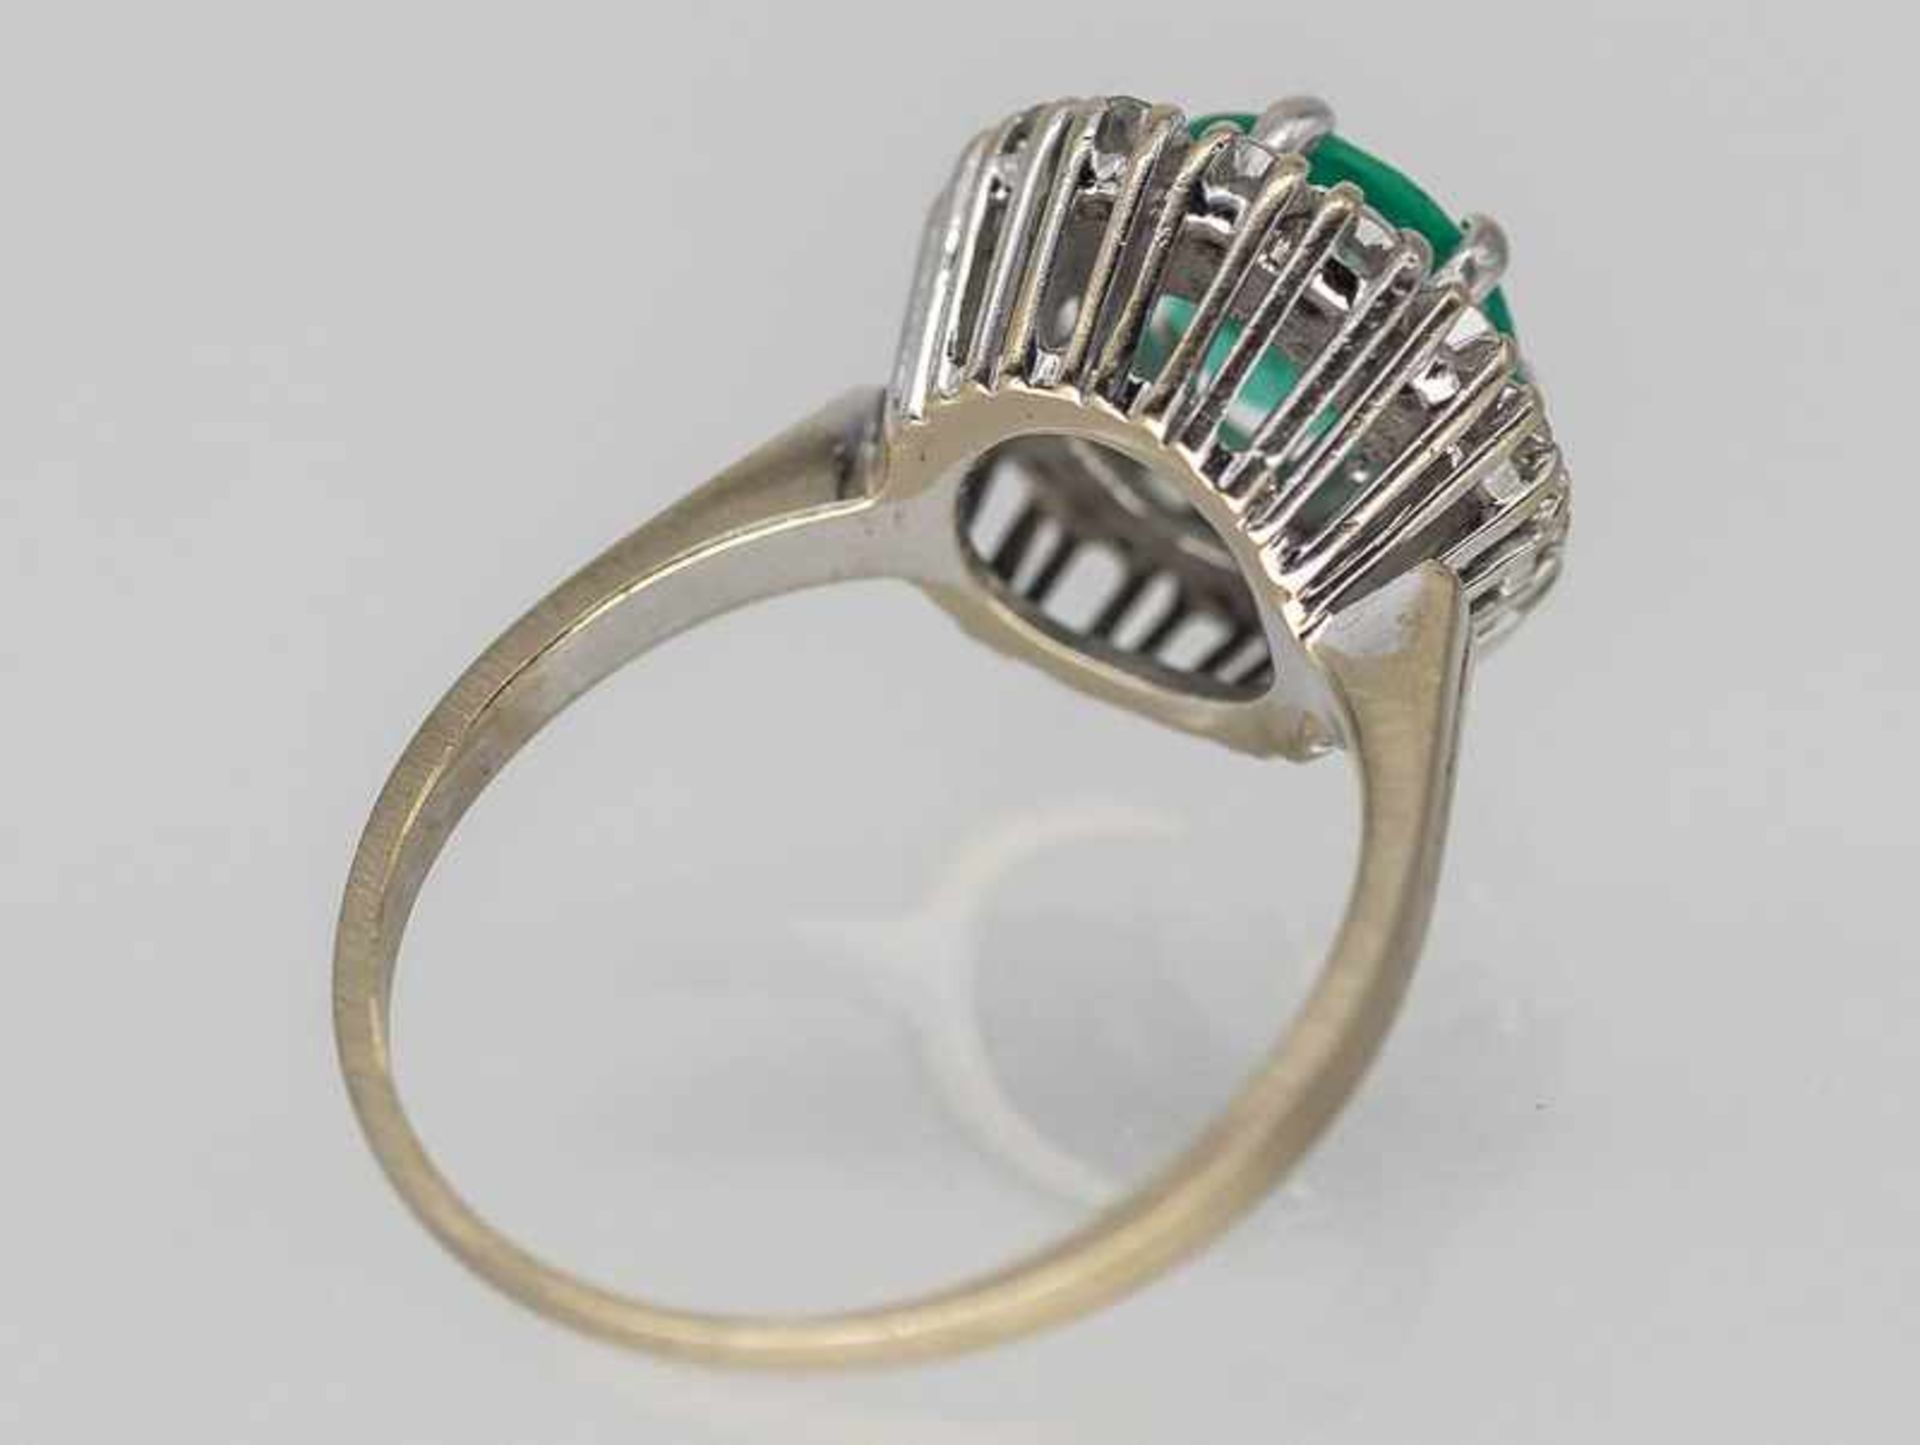 Ring mit Smaragd 1,85 ct und 16 Brillanten 0,65 ct, 80- er Jahre. - Bild 3 aus 3